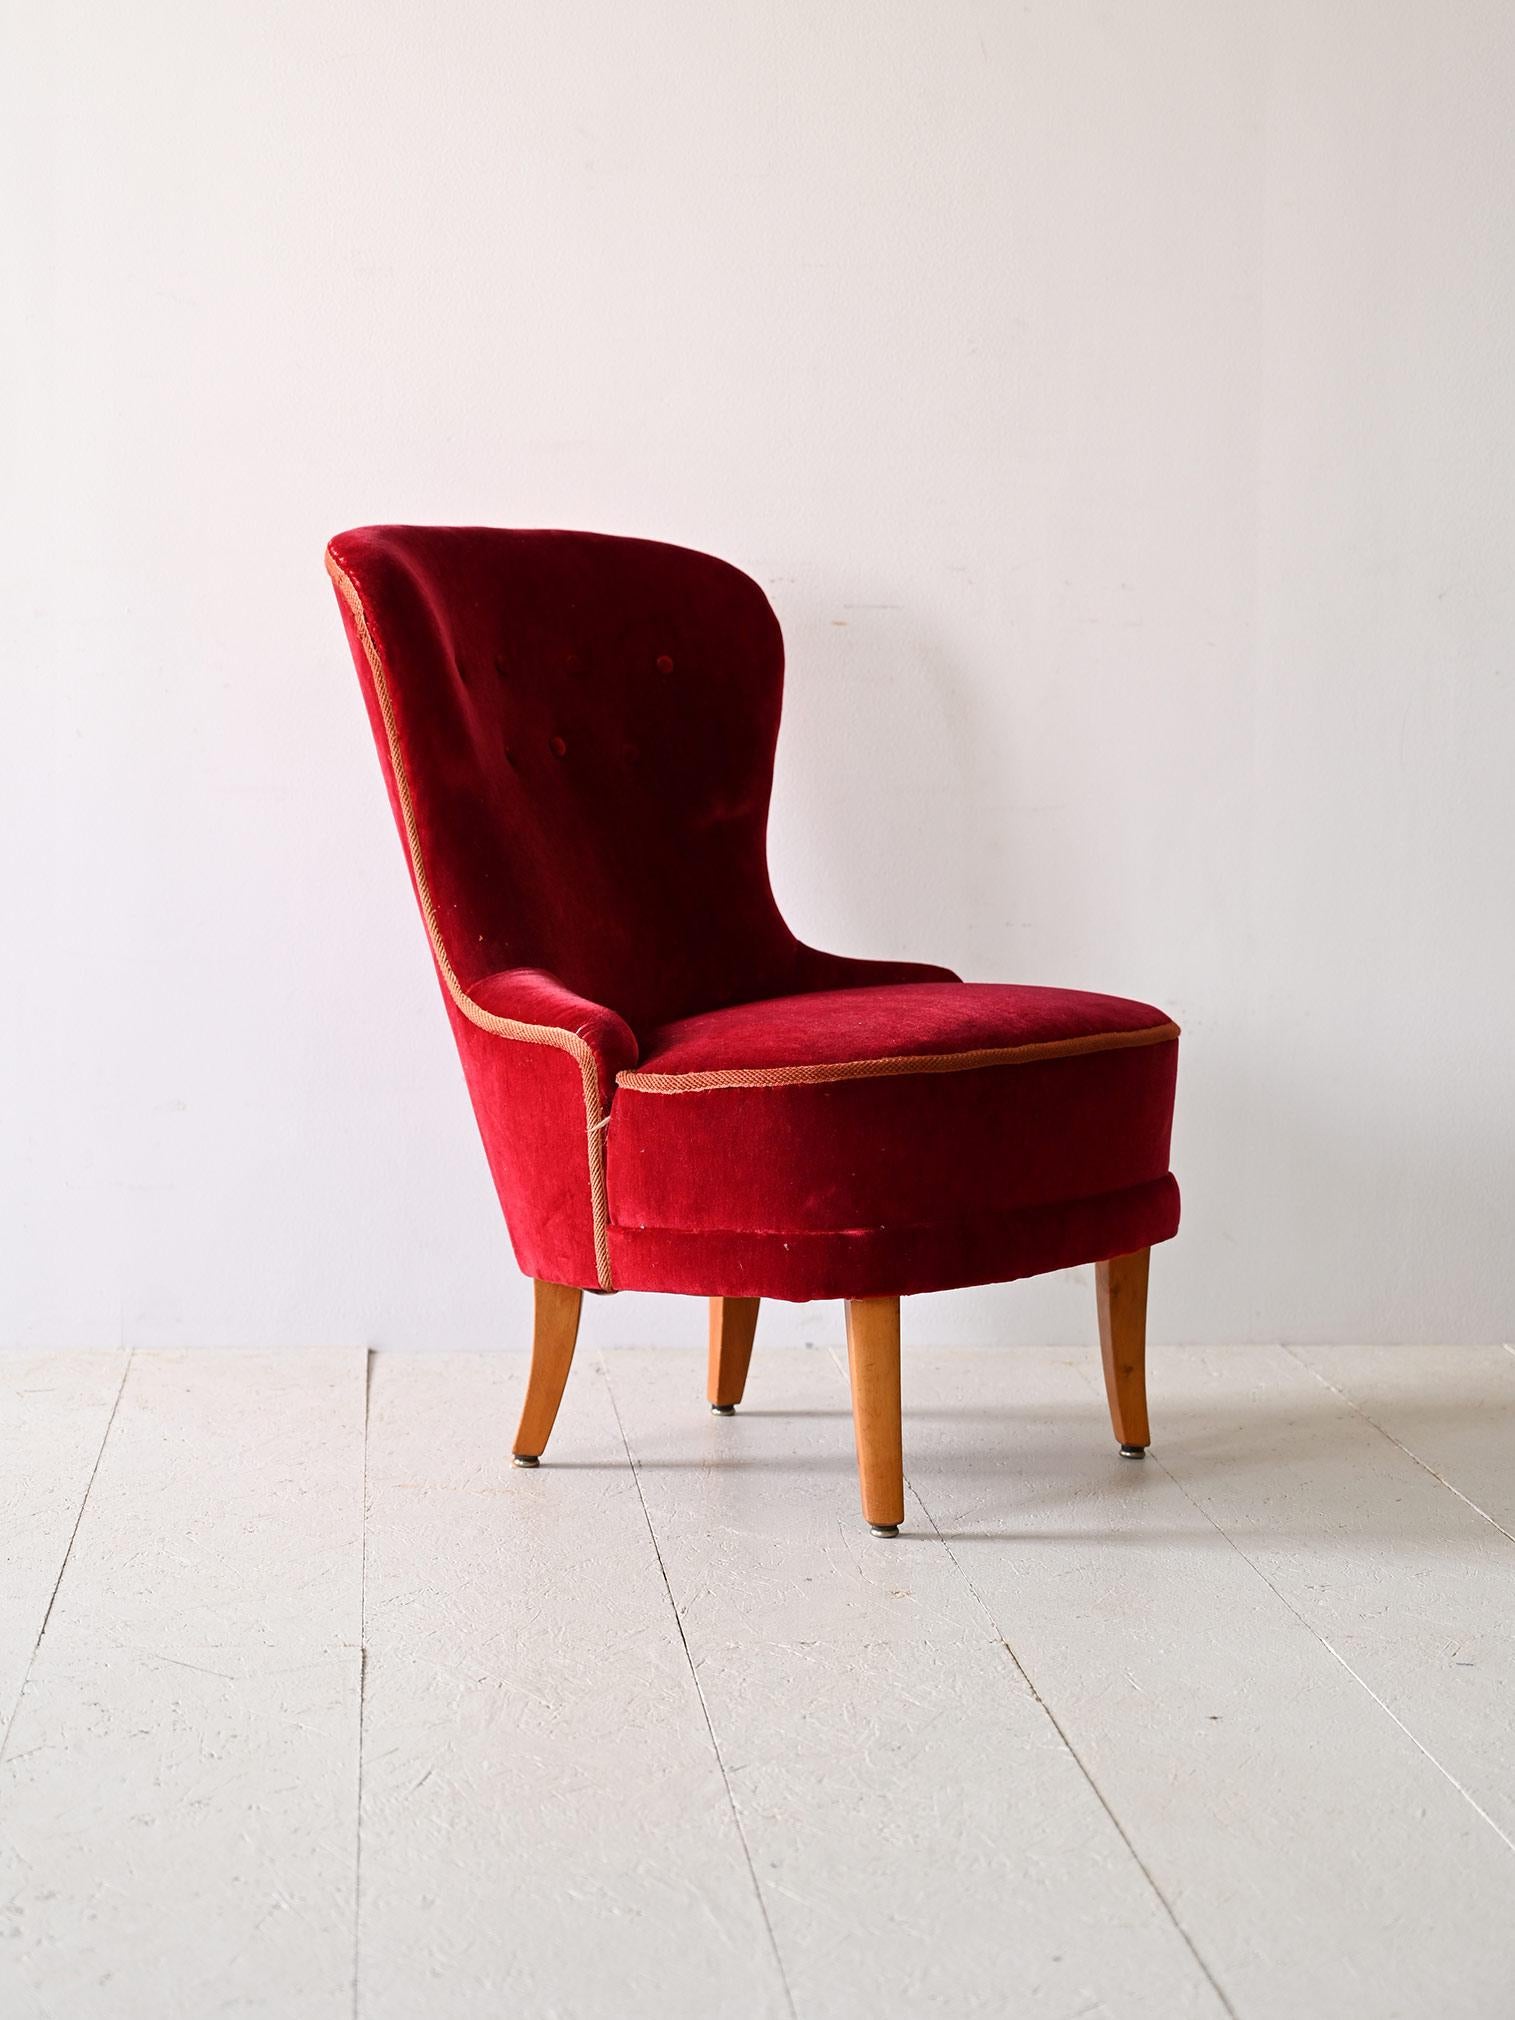 Vintage-Sessel aus rotem Samt.

Dieser rote Samtsessel verkörpert die Eleganz und Raffinesse des skandinavischen Stils der 1940er Jahre. Die konisch zulaufenden Beine verleihen der Struktur einen Hauch von Leichtigkeit und Modernität, während die